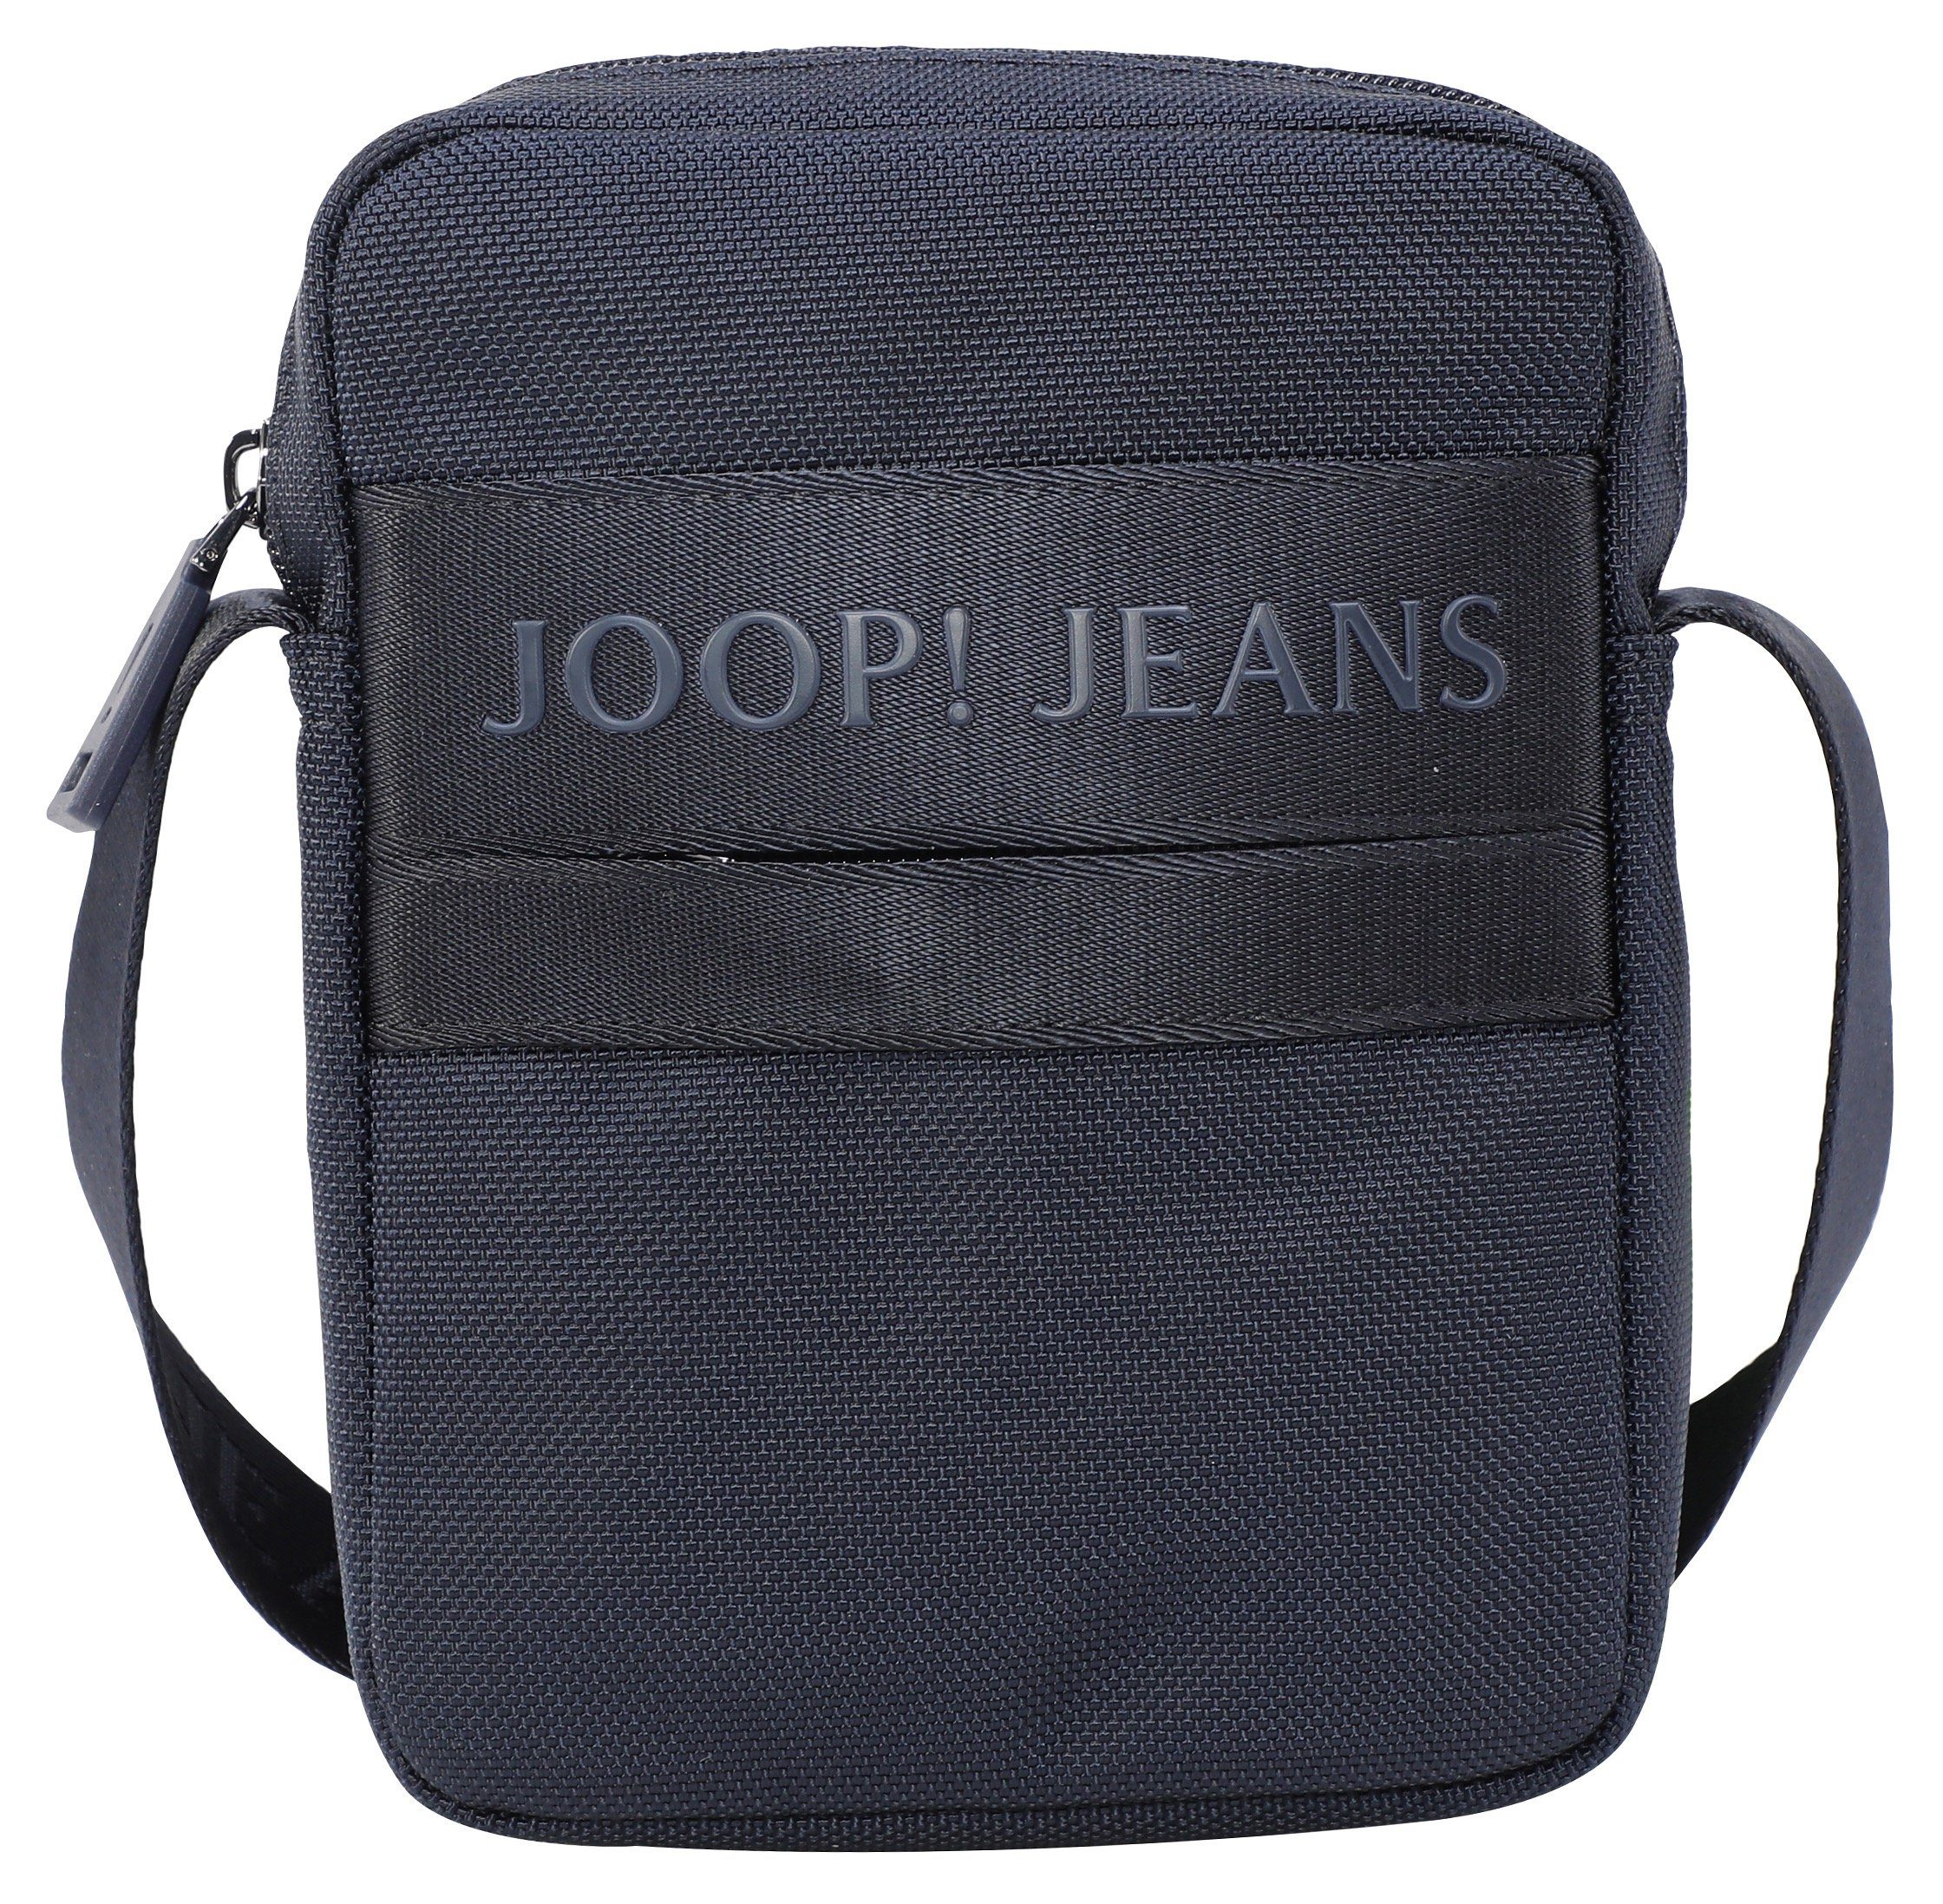 Erstaunlich niedrige Preise Joop Jeans dunkelblau rafael modica shoulderbag im praktischen Design Umhängetasche xsvz